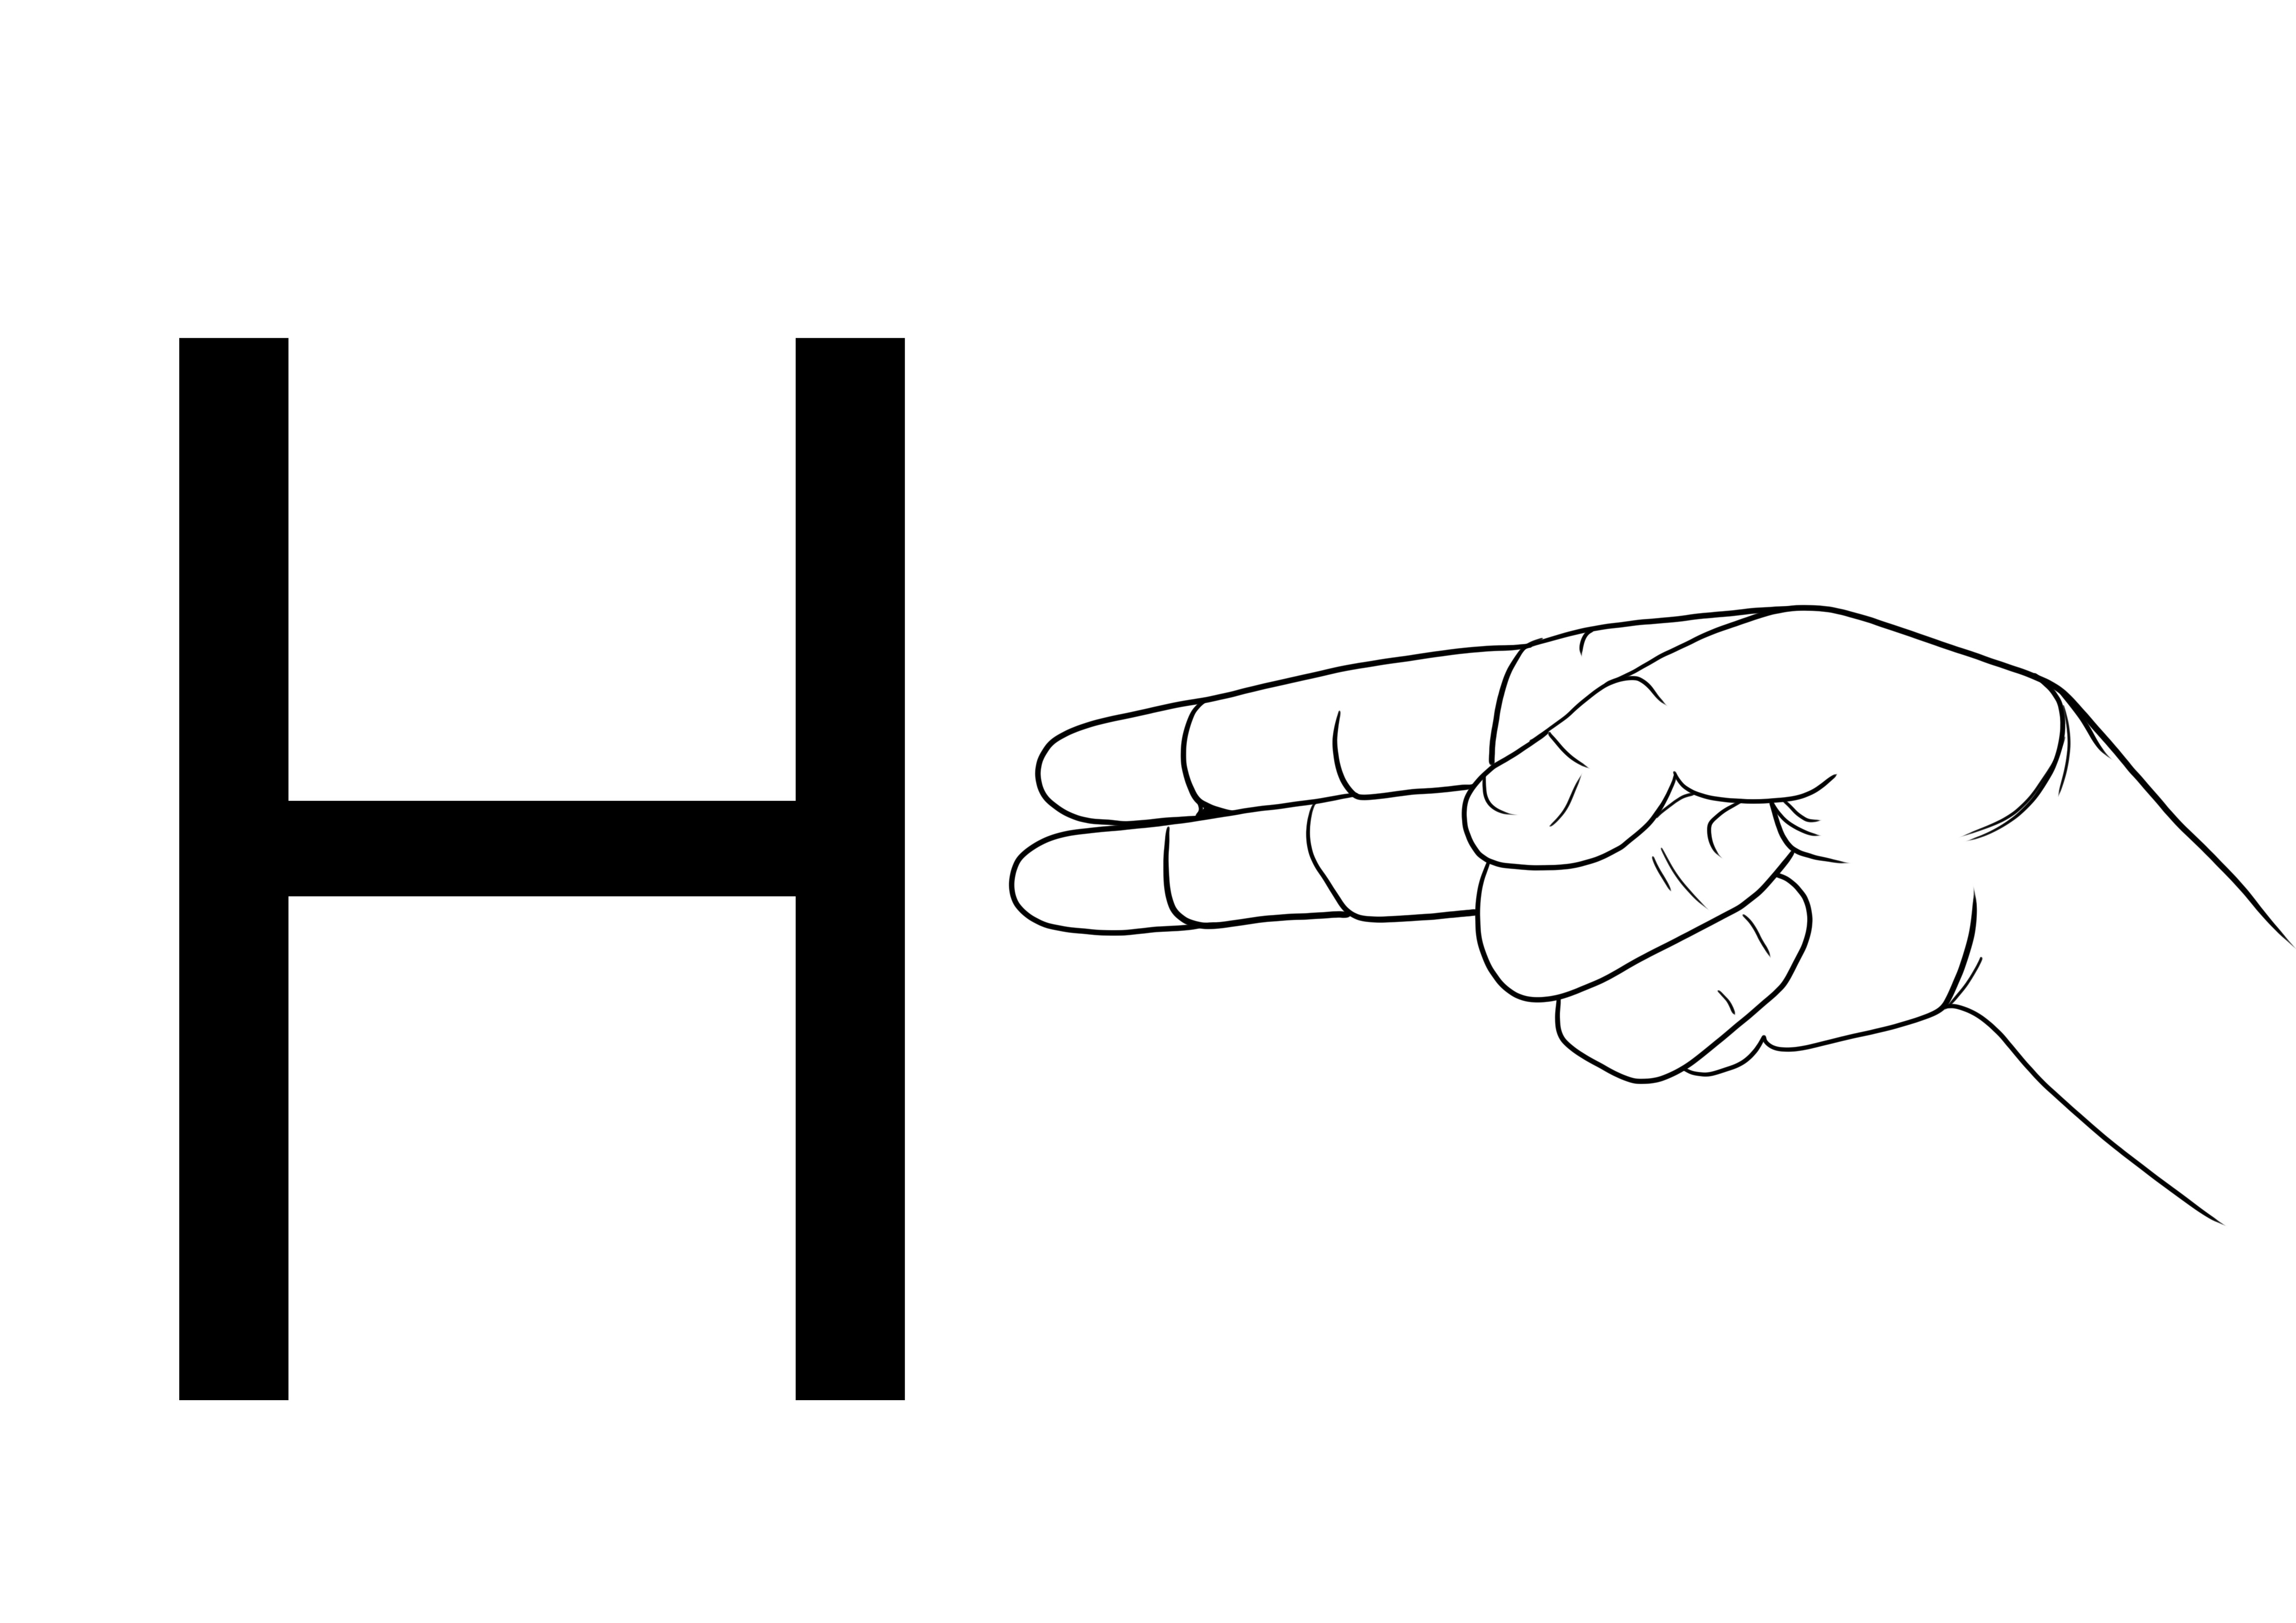 ASL harfi H boyama resmi ücretsiz